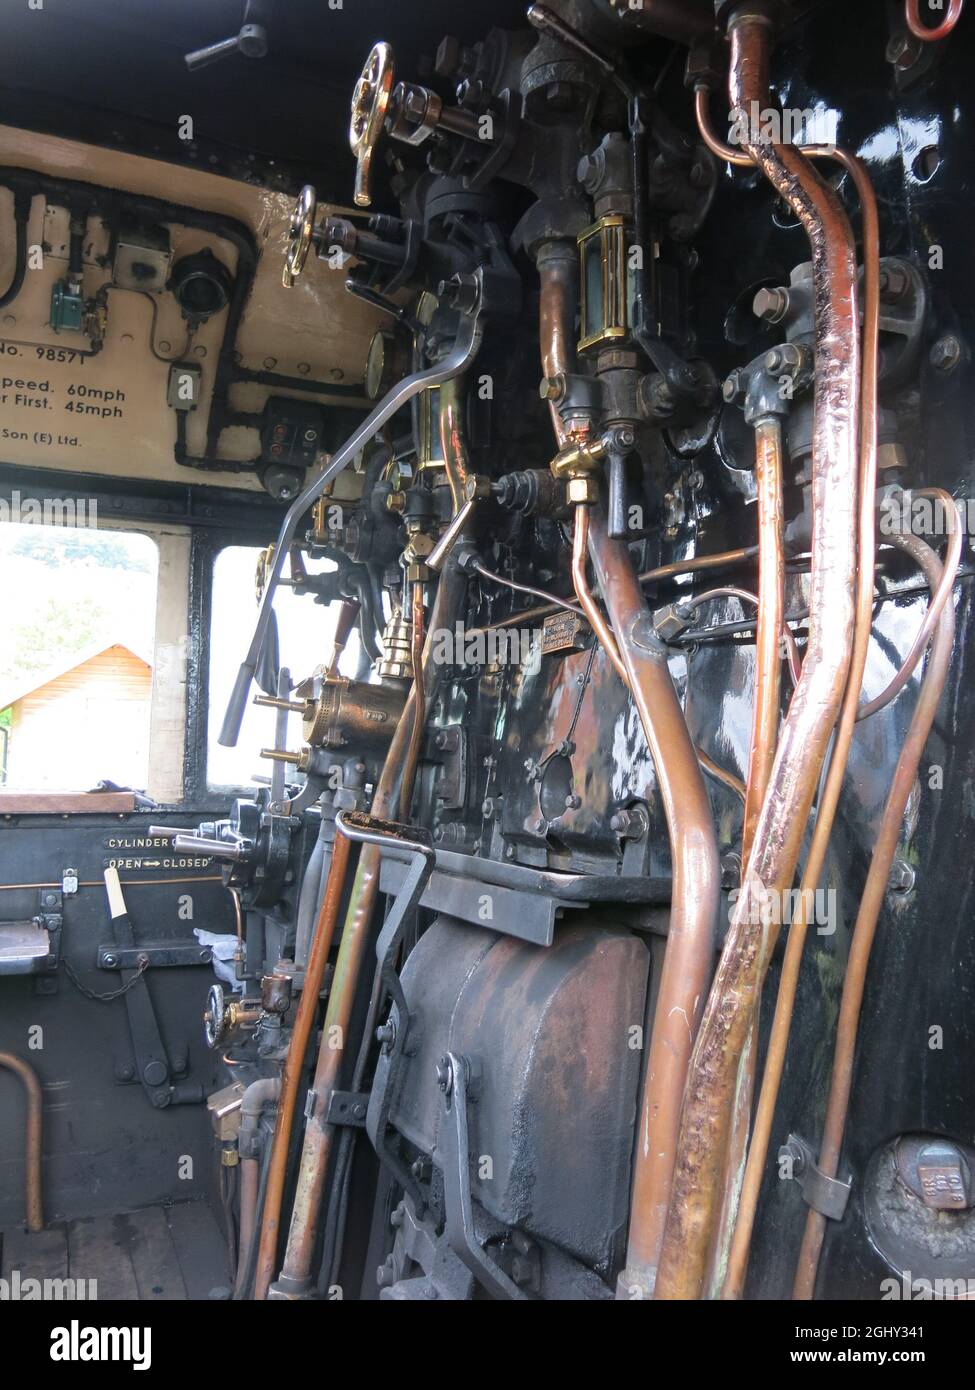 Vue rapprochée de la cabine conducteur avec toutes les commandes et le régulateur : le train à vapeur Jacobite, un chemin de fer historique emblématique sur la West Highland Line. Banque D'Images